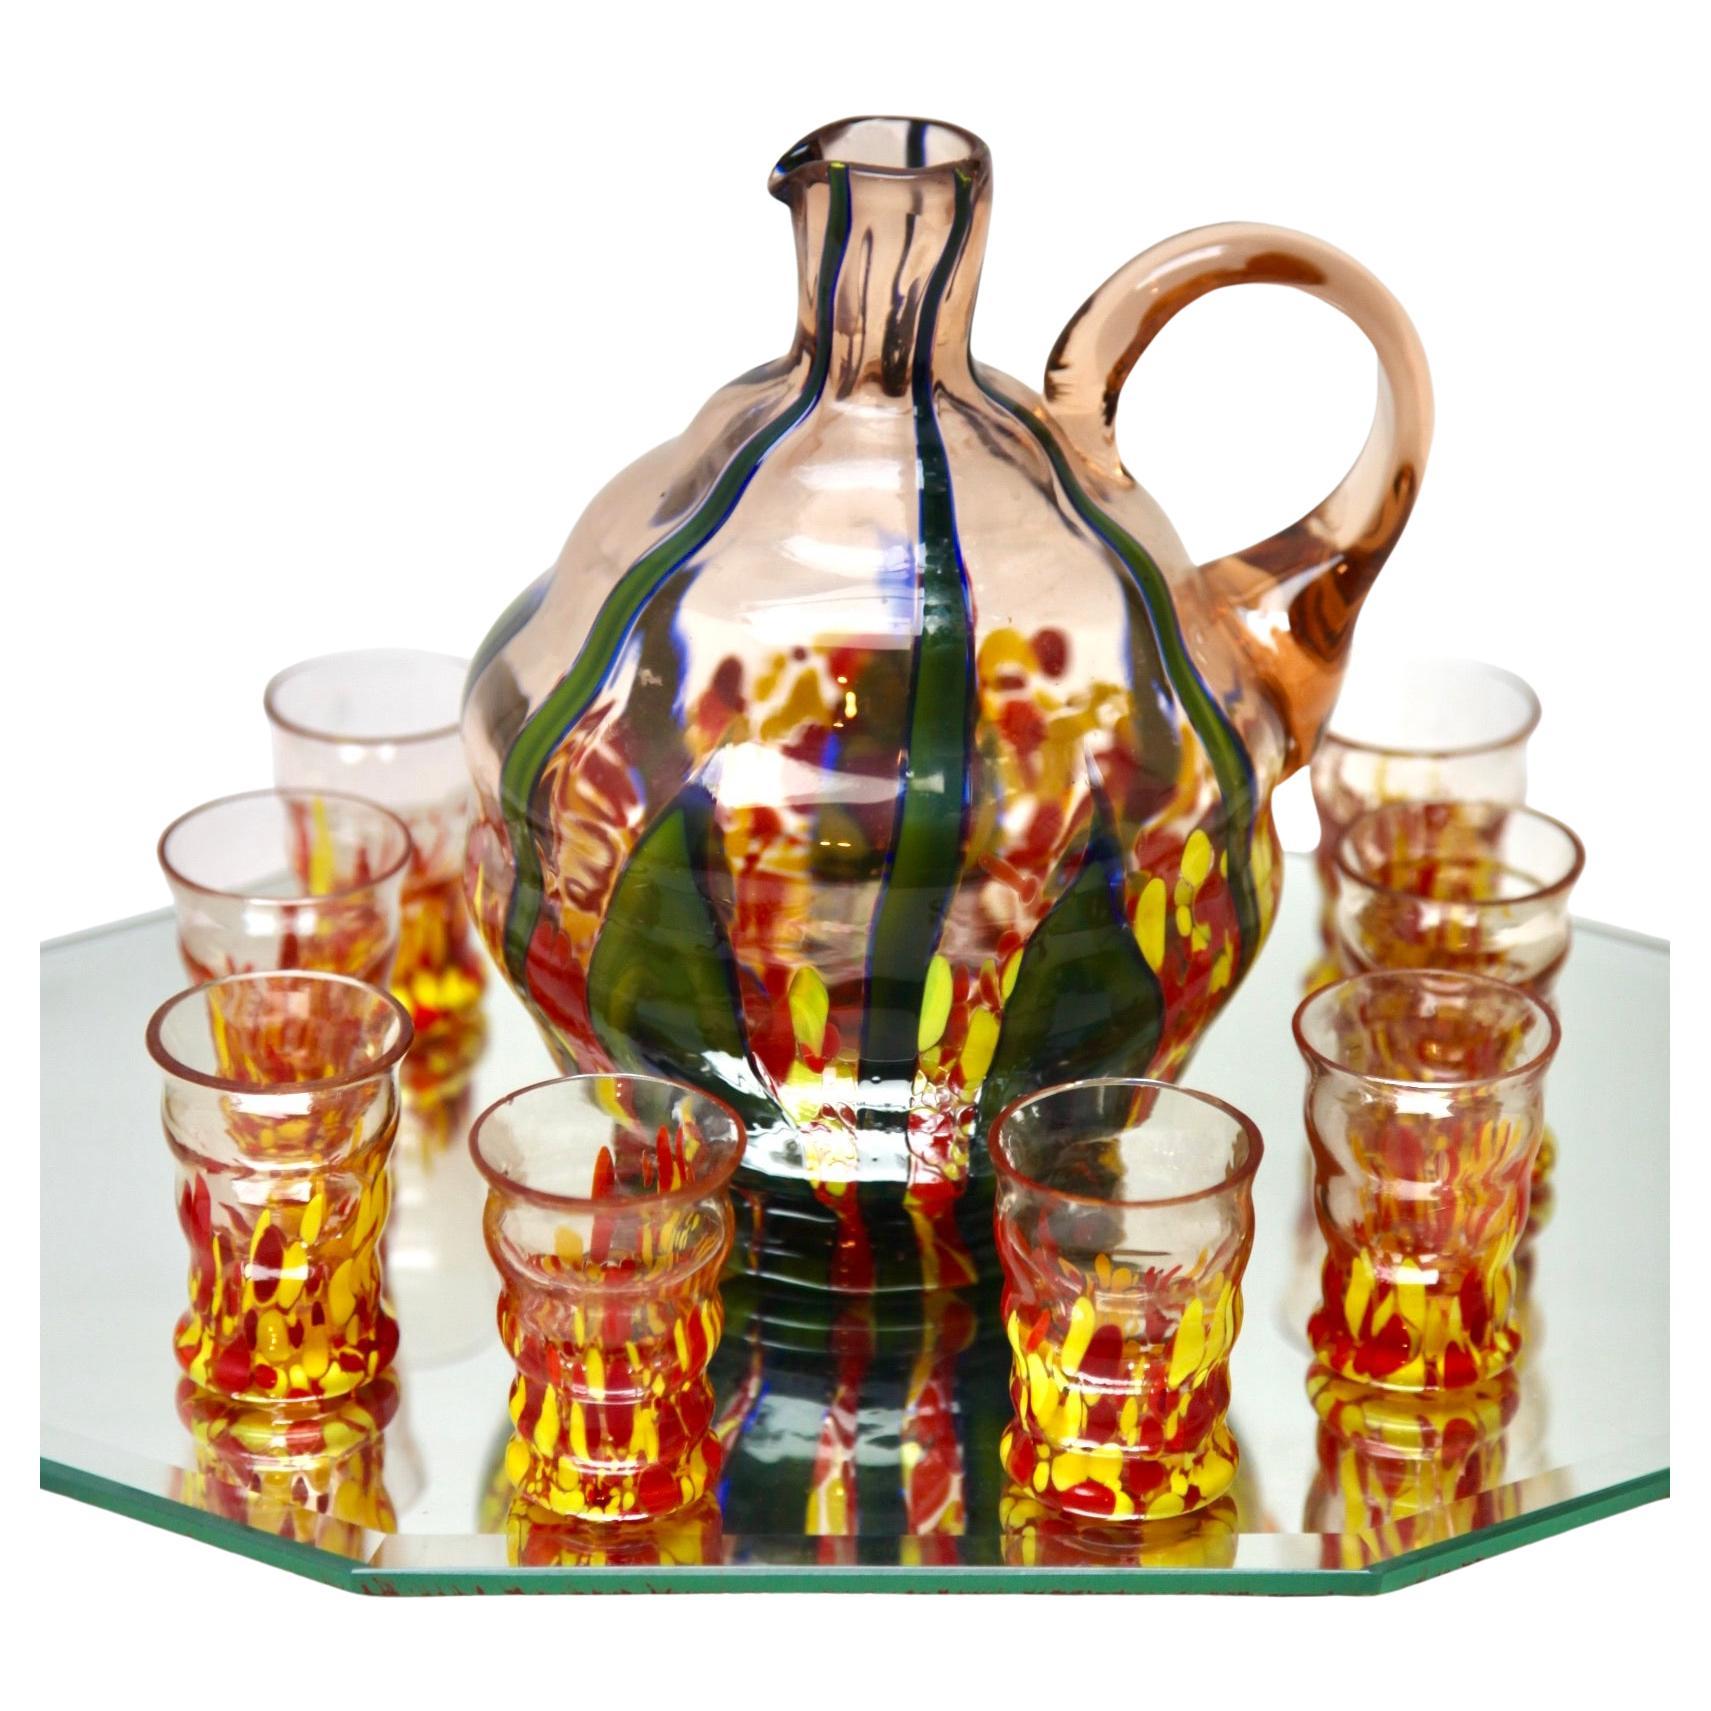 Ensemble de 8 verres à liqueur et carafe de Murano, avec plateau de service, vers 1938